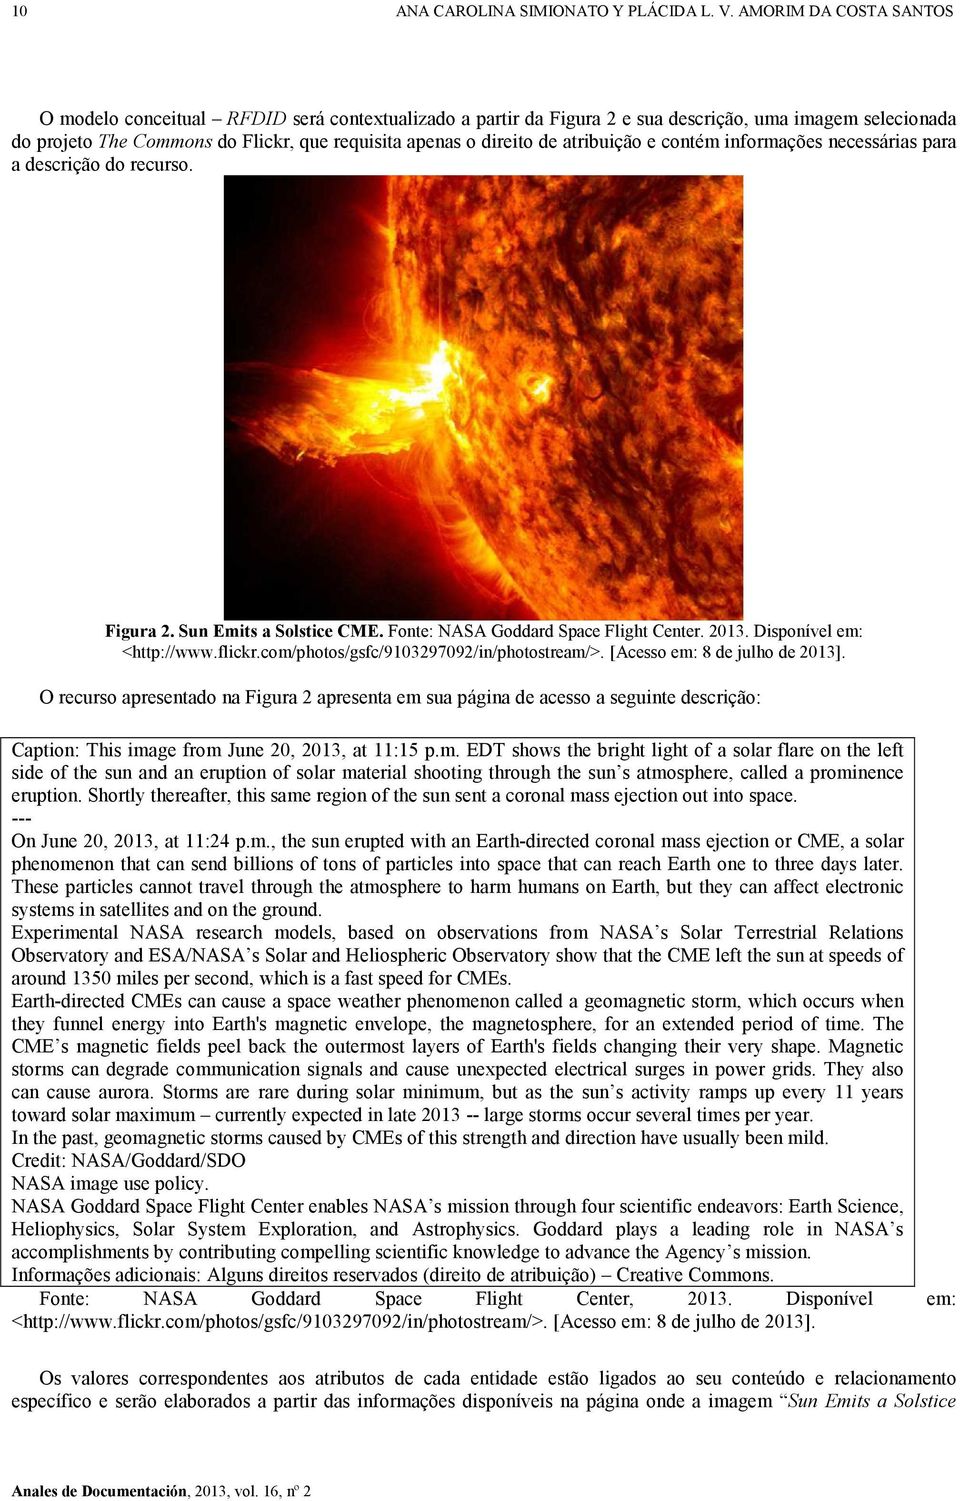 atribuição e contém informações necessárias para a descrição do recurso. Figura 2. Sun Emits a Solstice CME. Fonte: NASA Goddard Space Flight Center. 2013. Disponível em: <http://www.flickr.